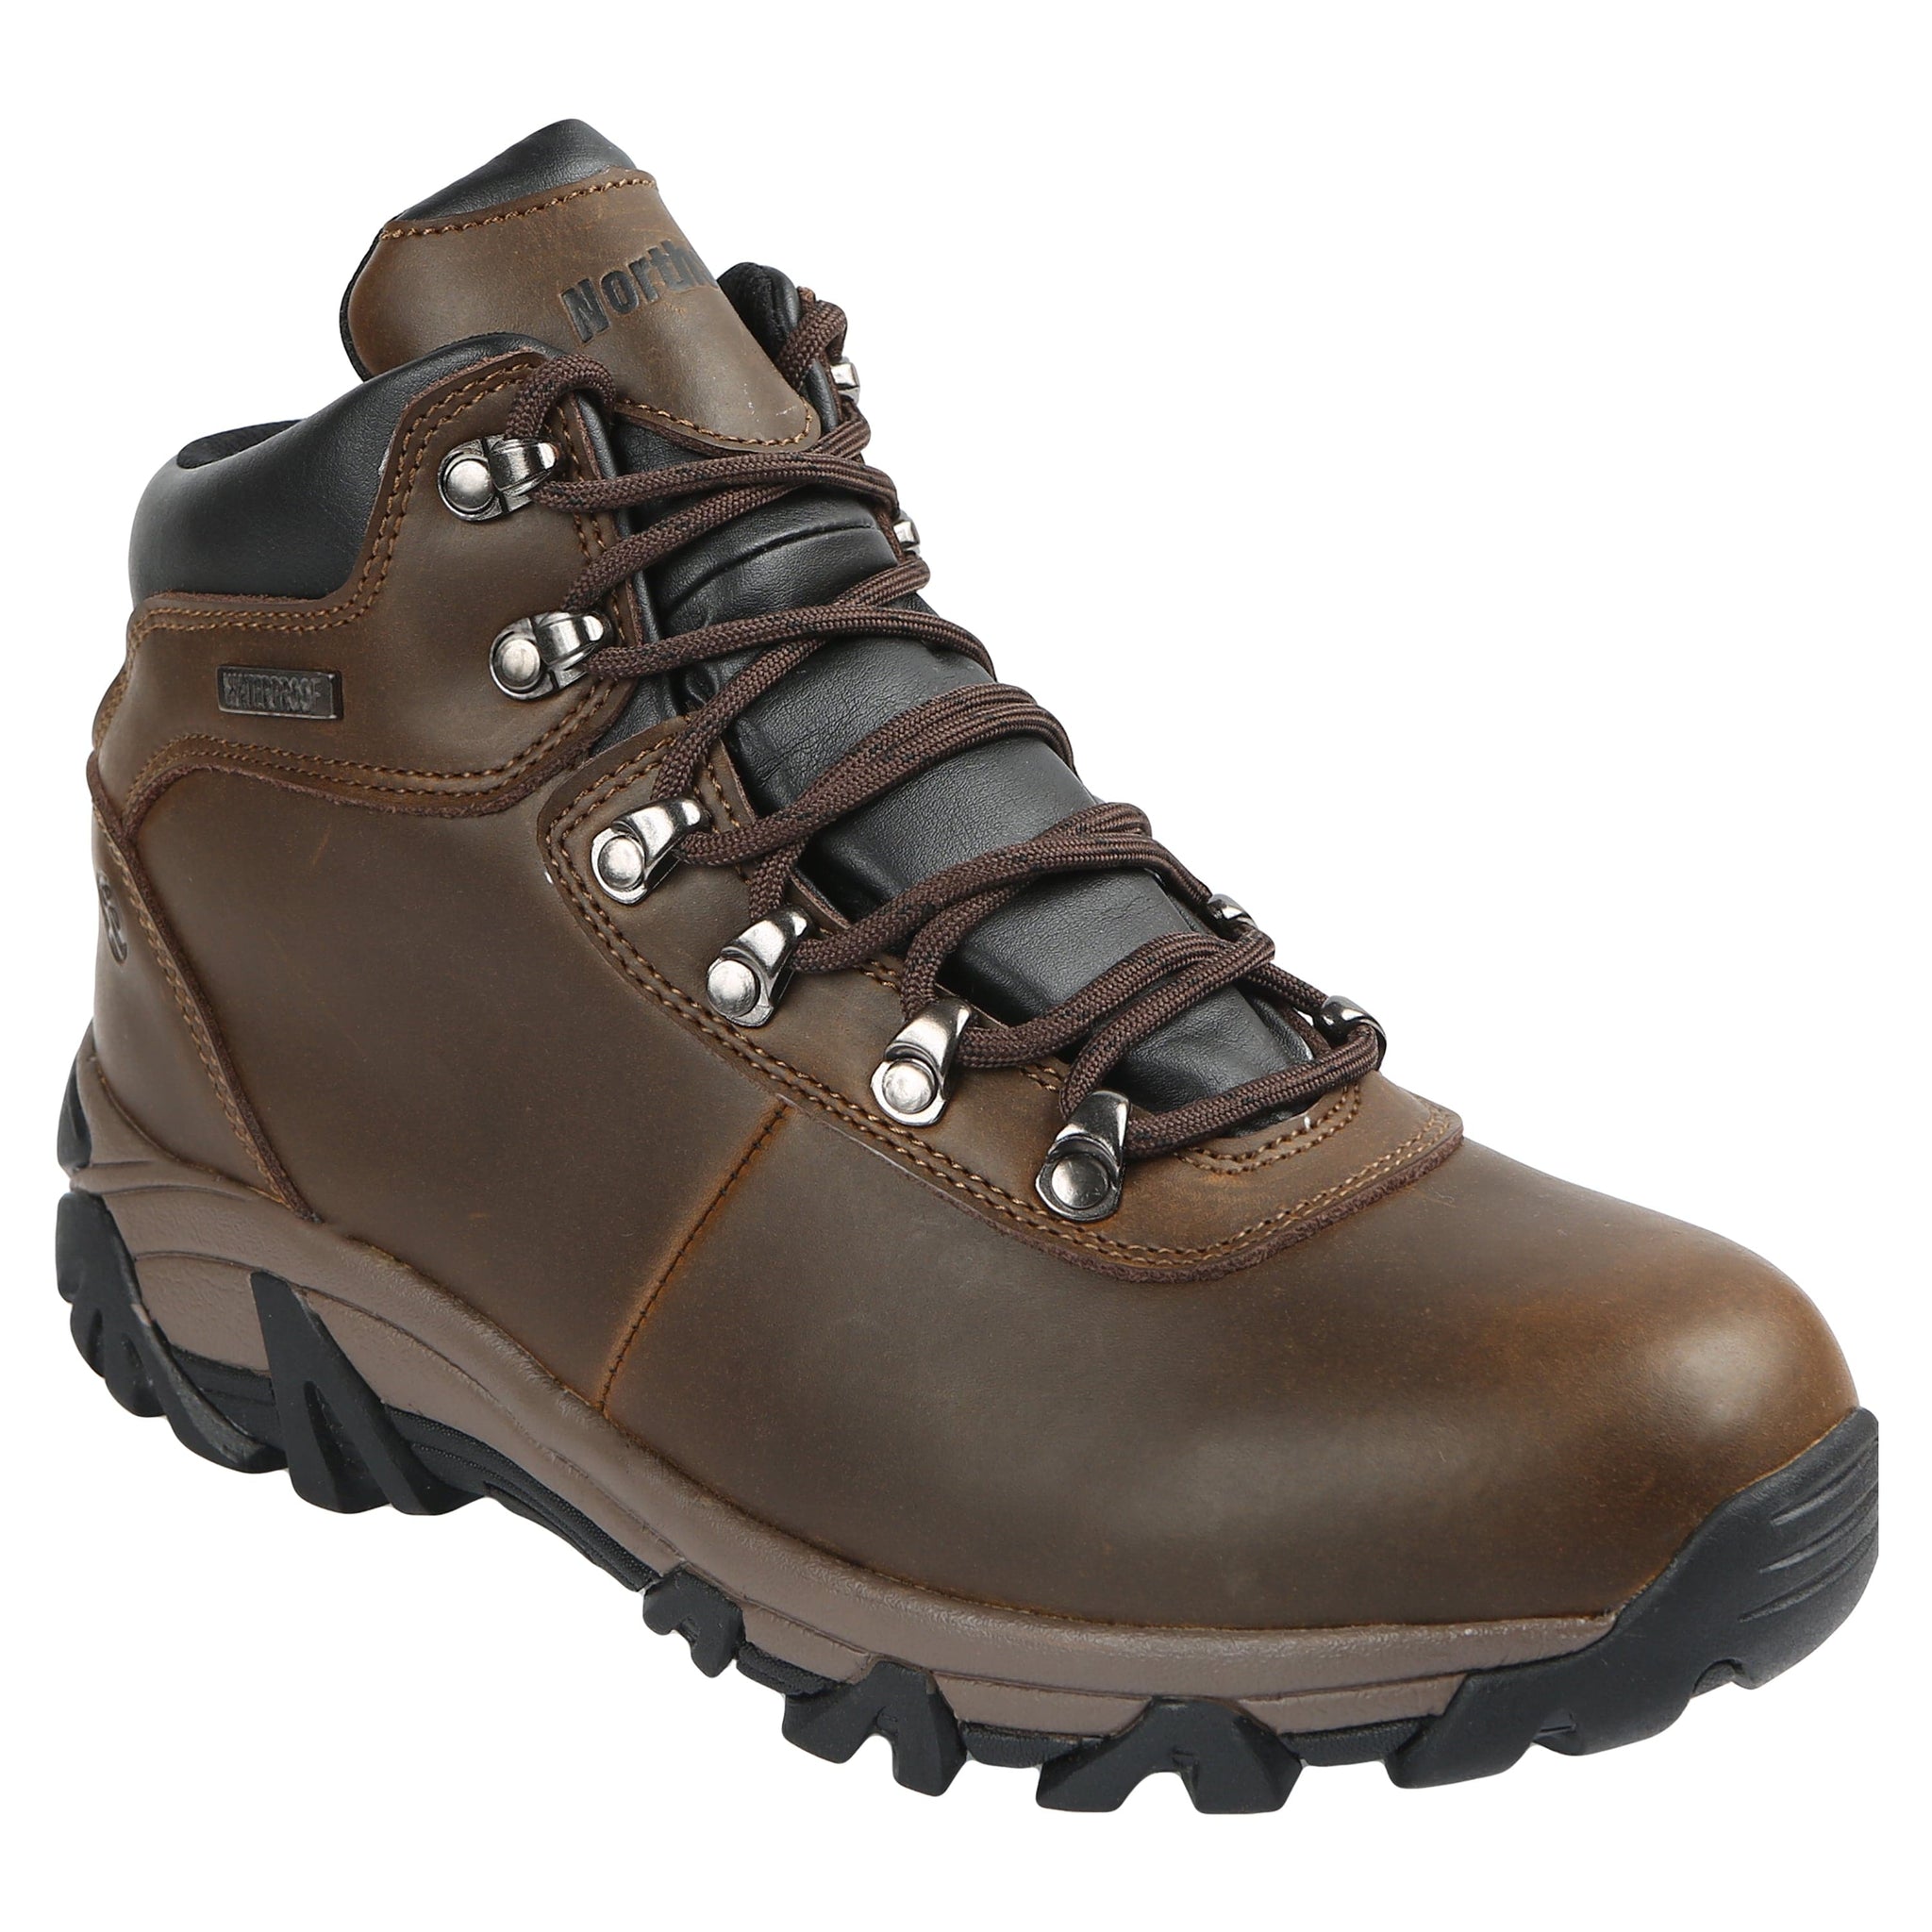 Northside Men's McKinley Waterproof Hiking Boot,Brown,8 M US